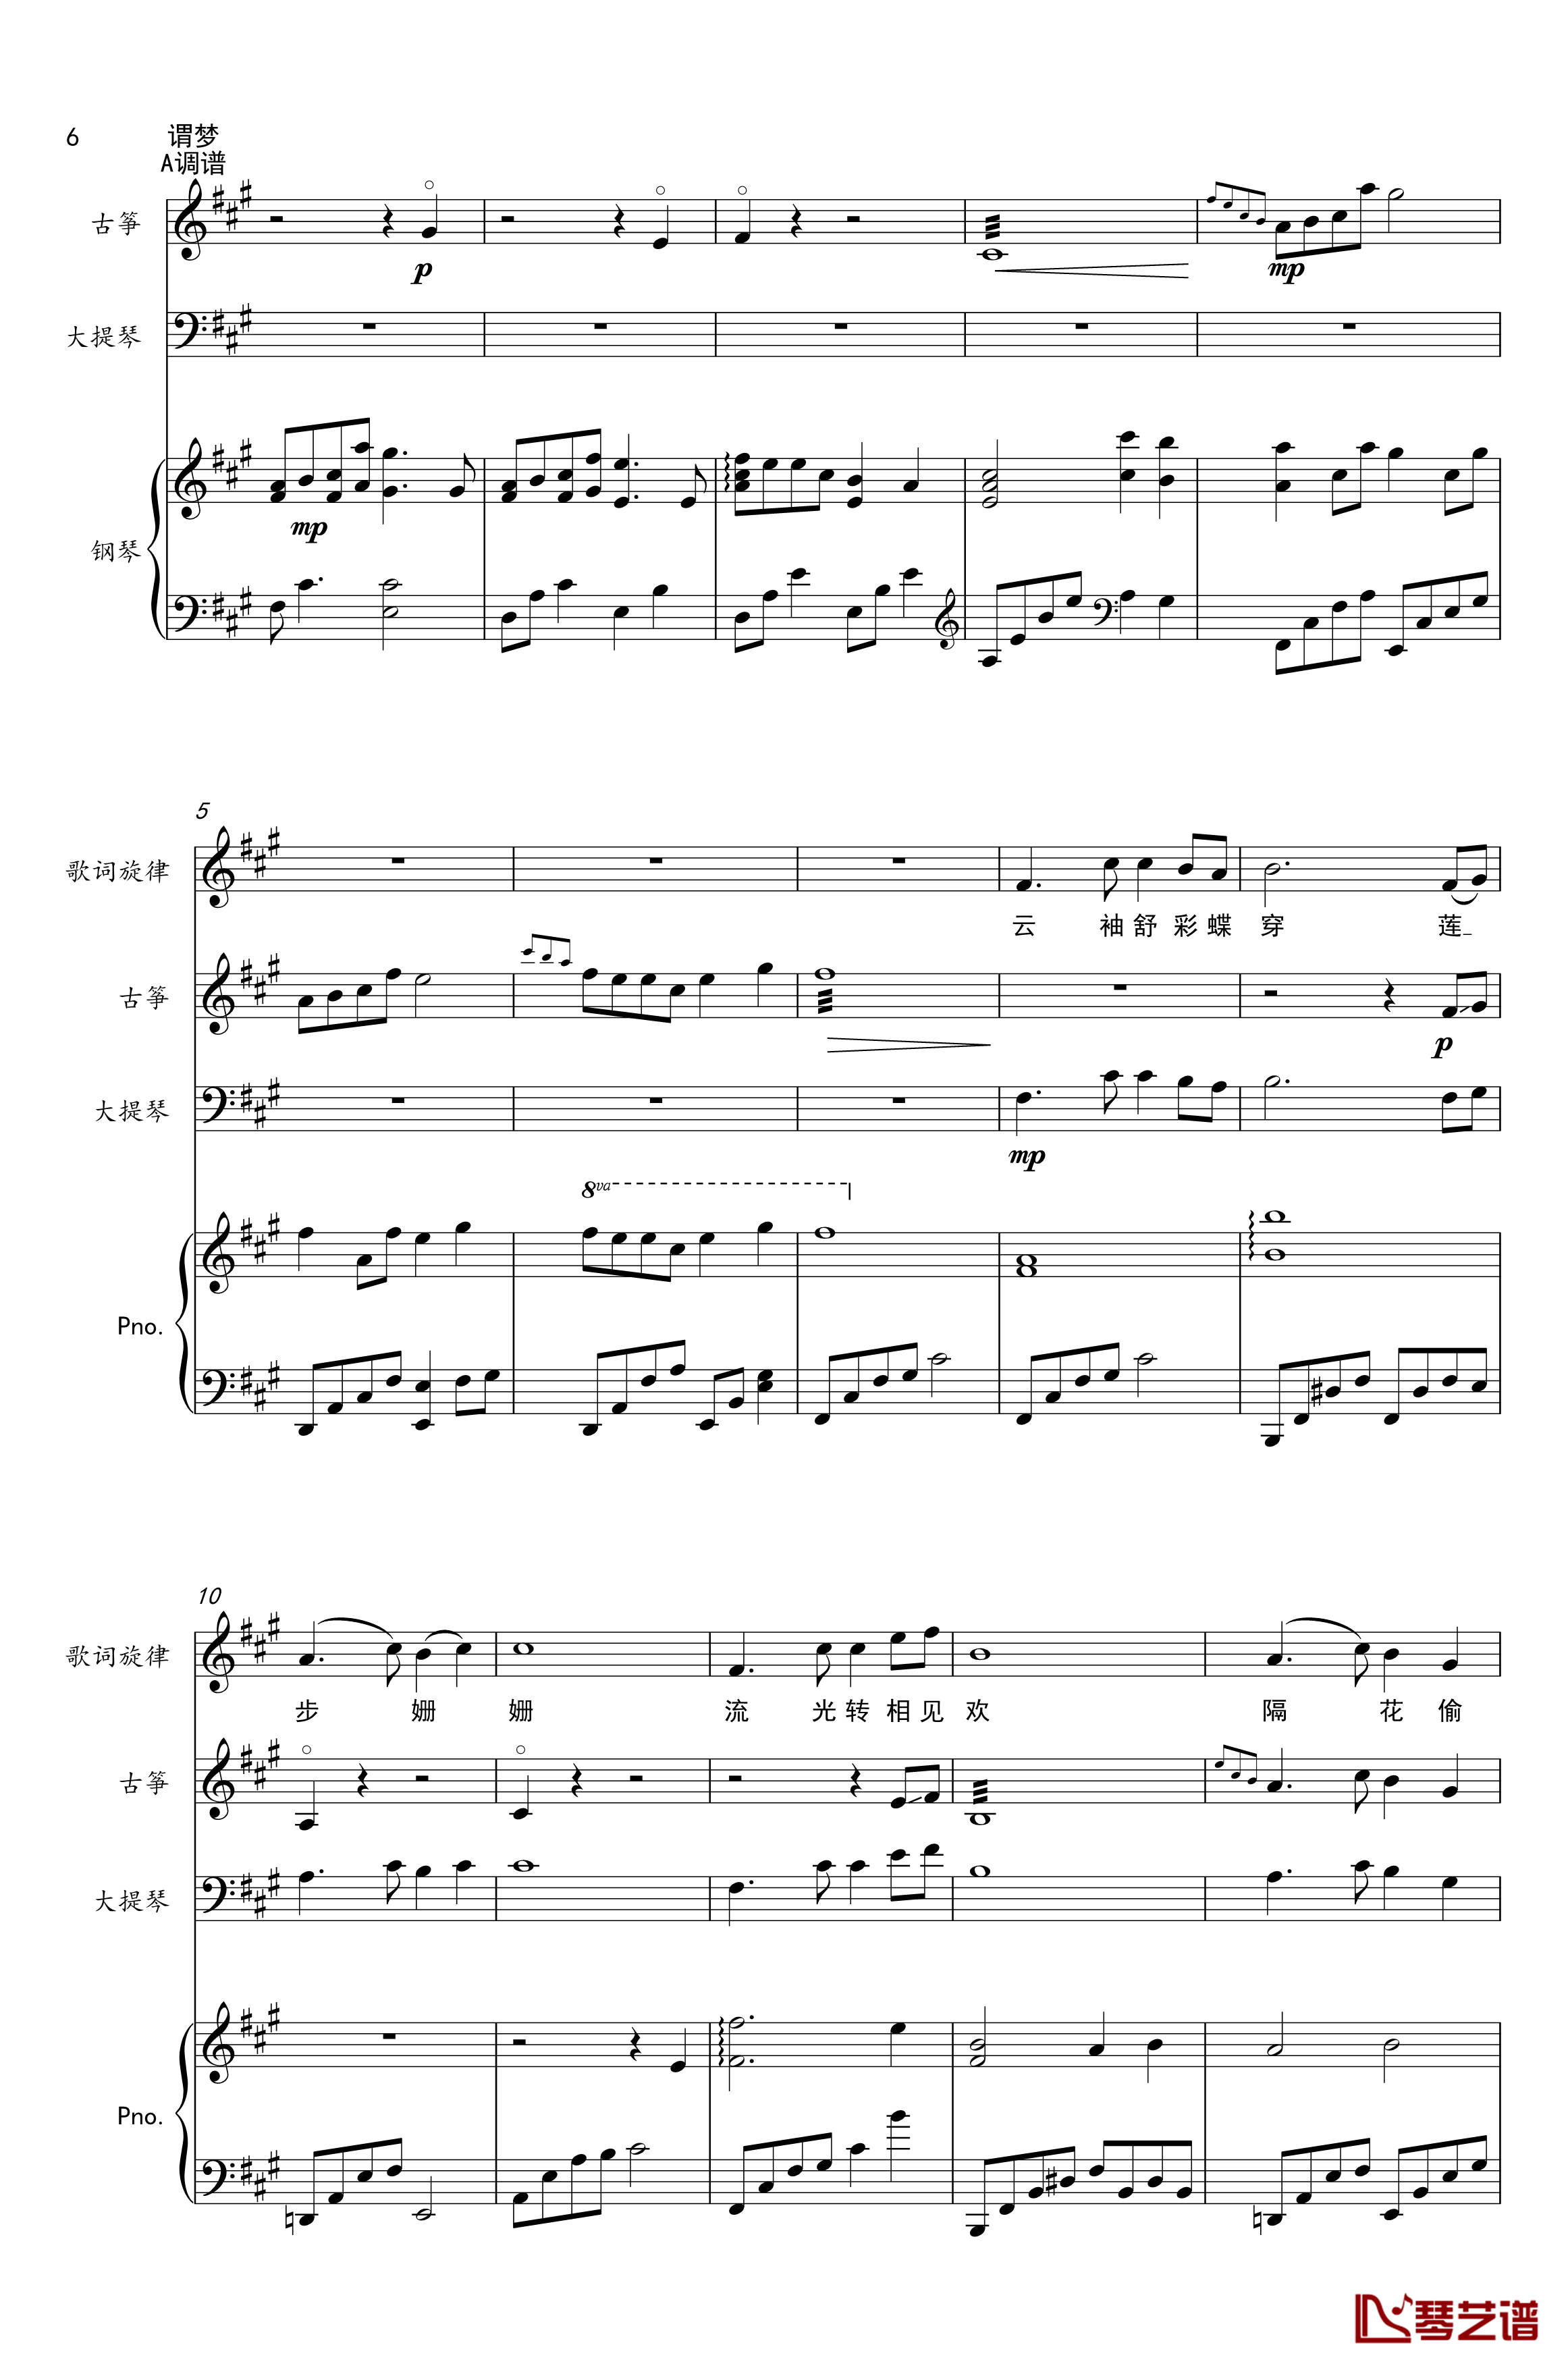 谓梦钢琴谱-古筝&大提琴&钢琴-樱の雪6